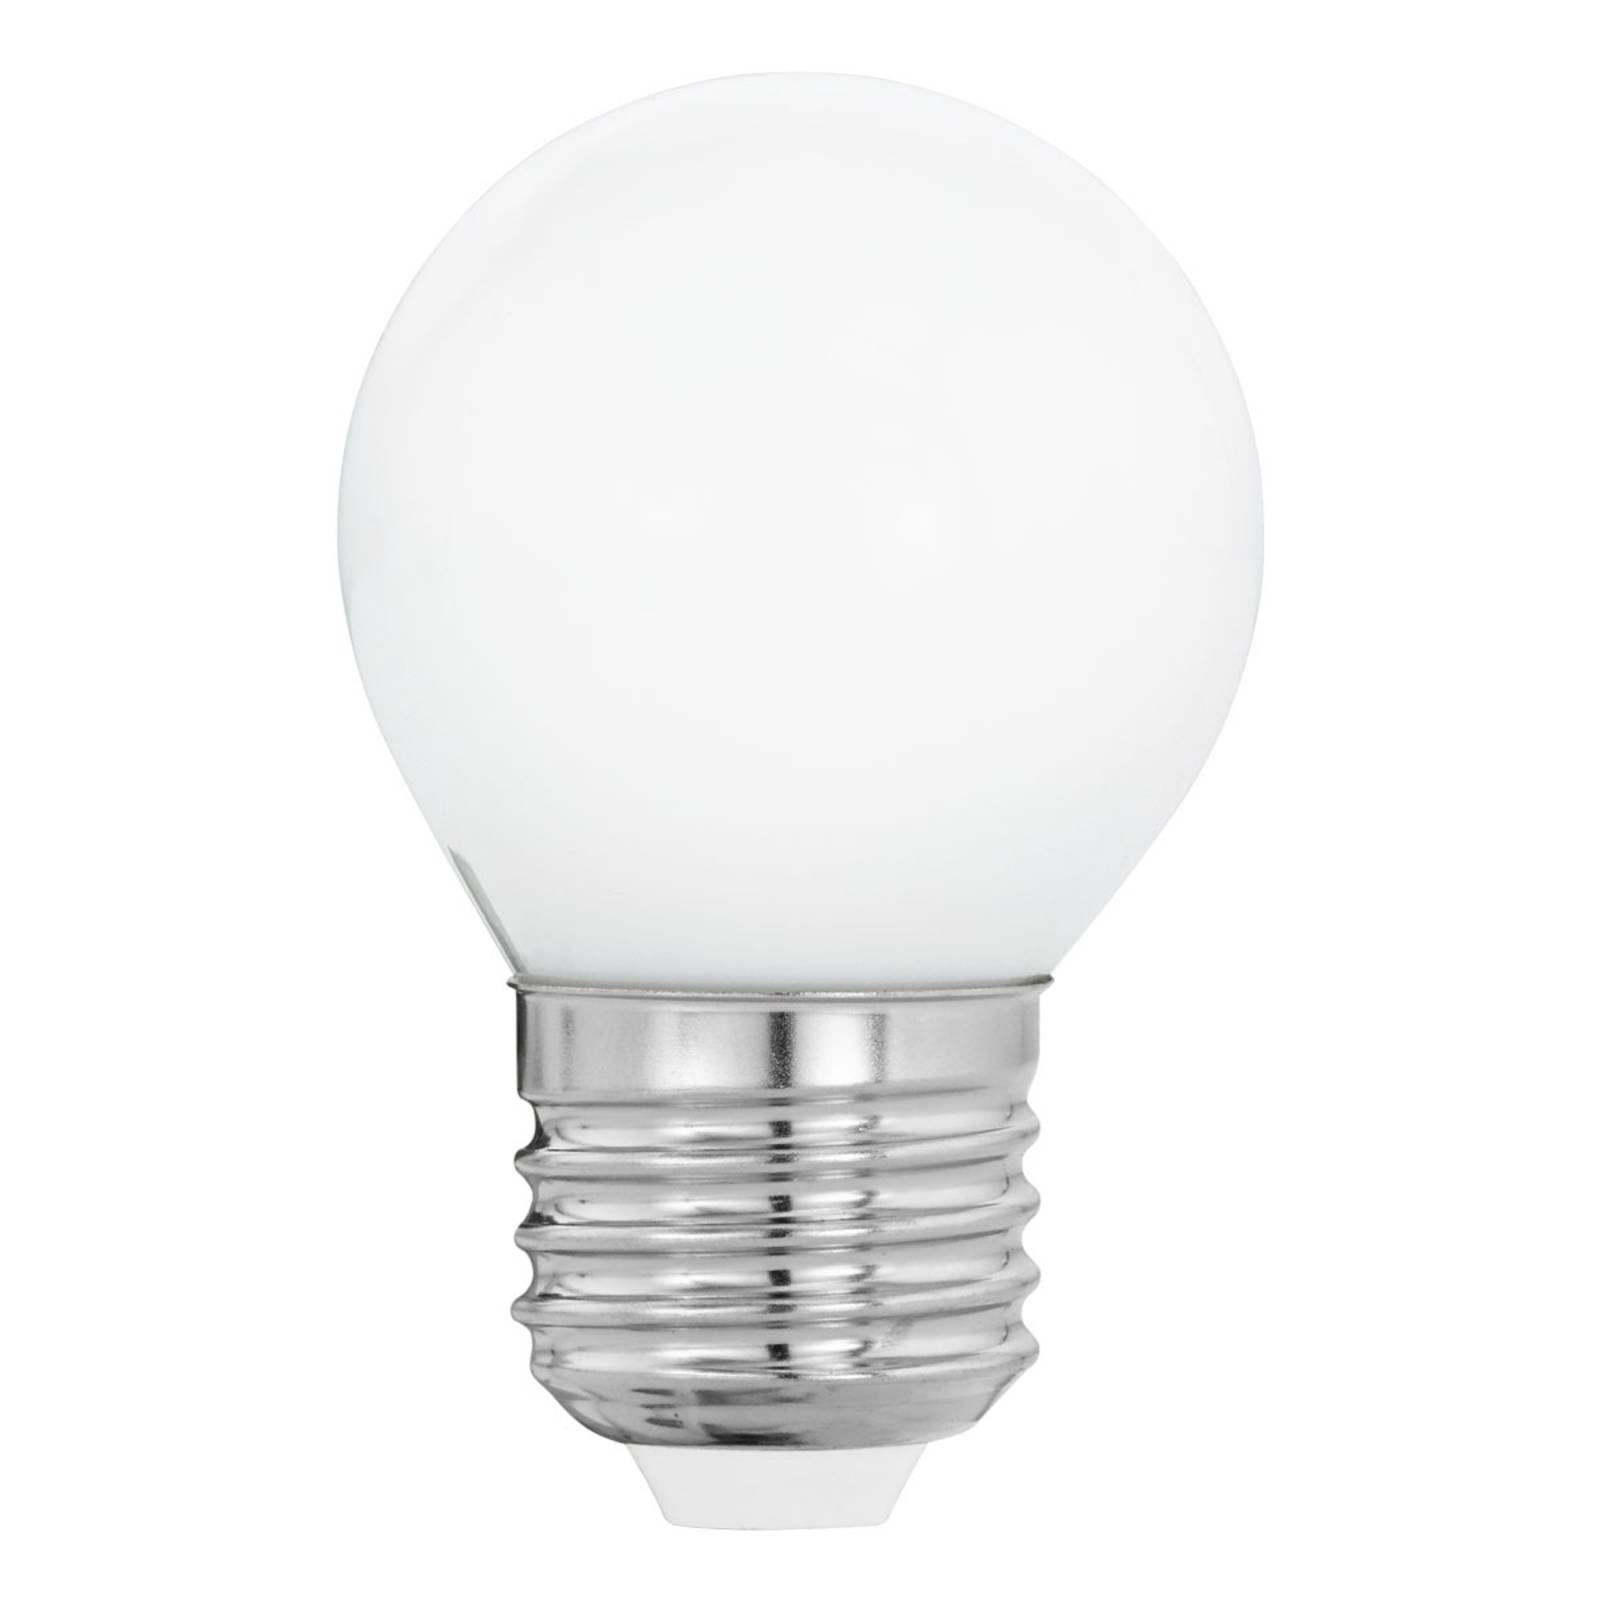 EGLO LED žiarovka E27 G45 4 W, teplá biela, opál, sklo, E27, 4W, Energialuokka: E, P: 7.5 cm